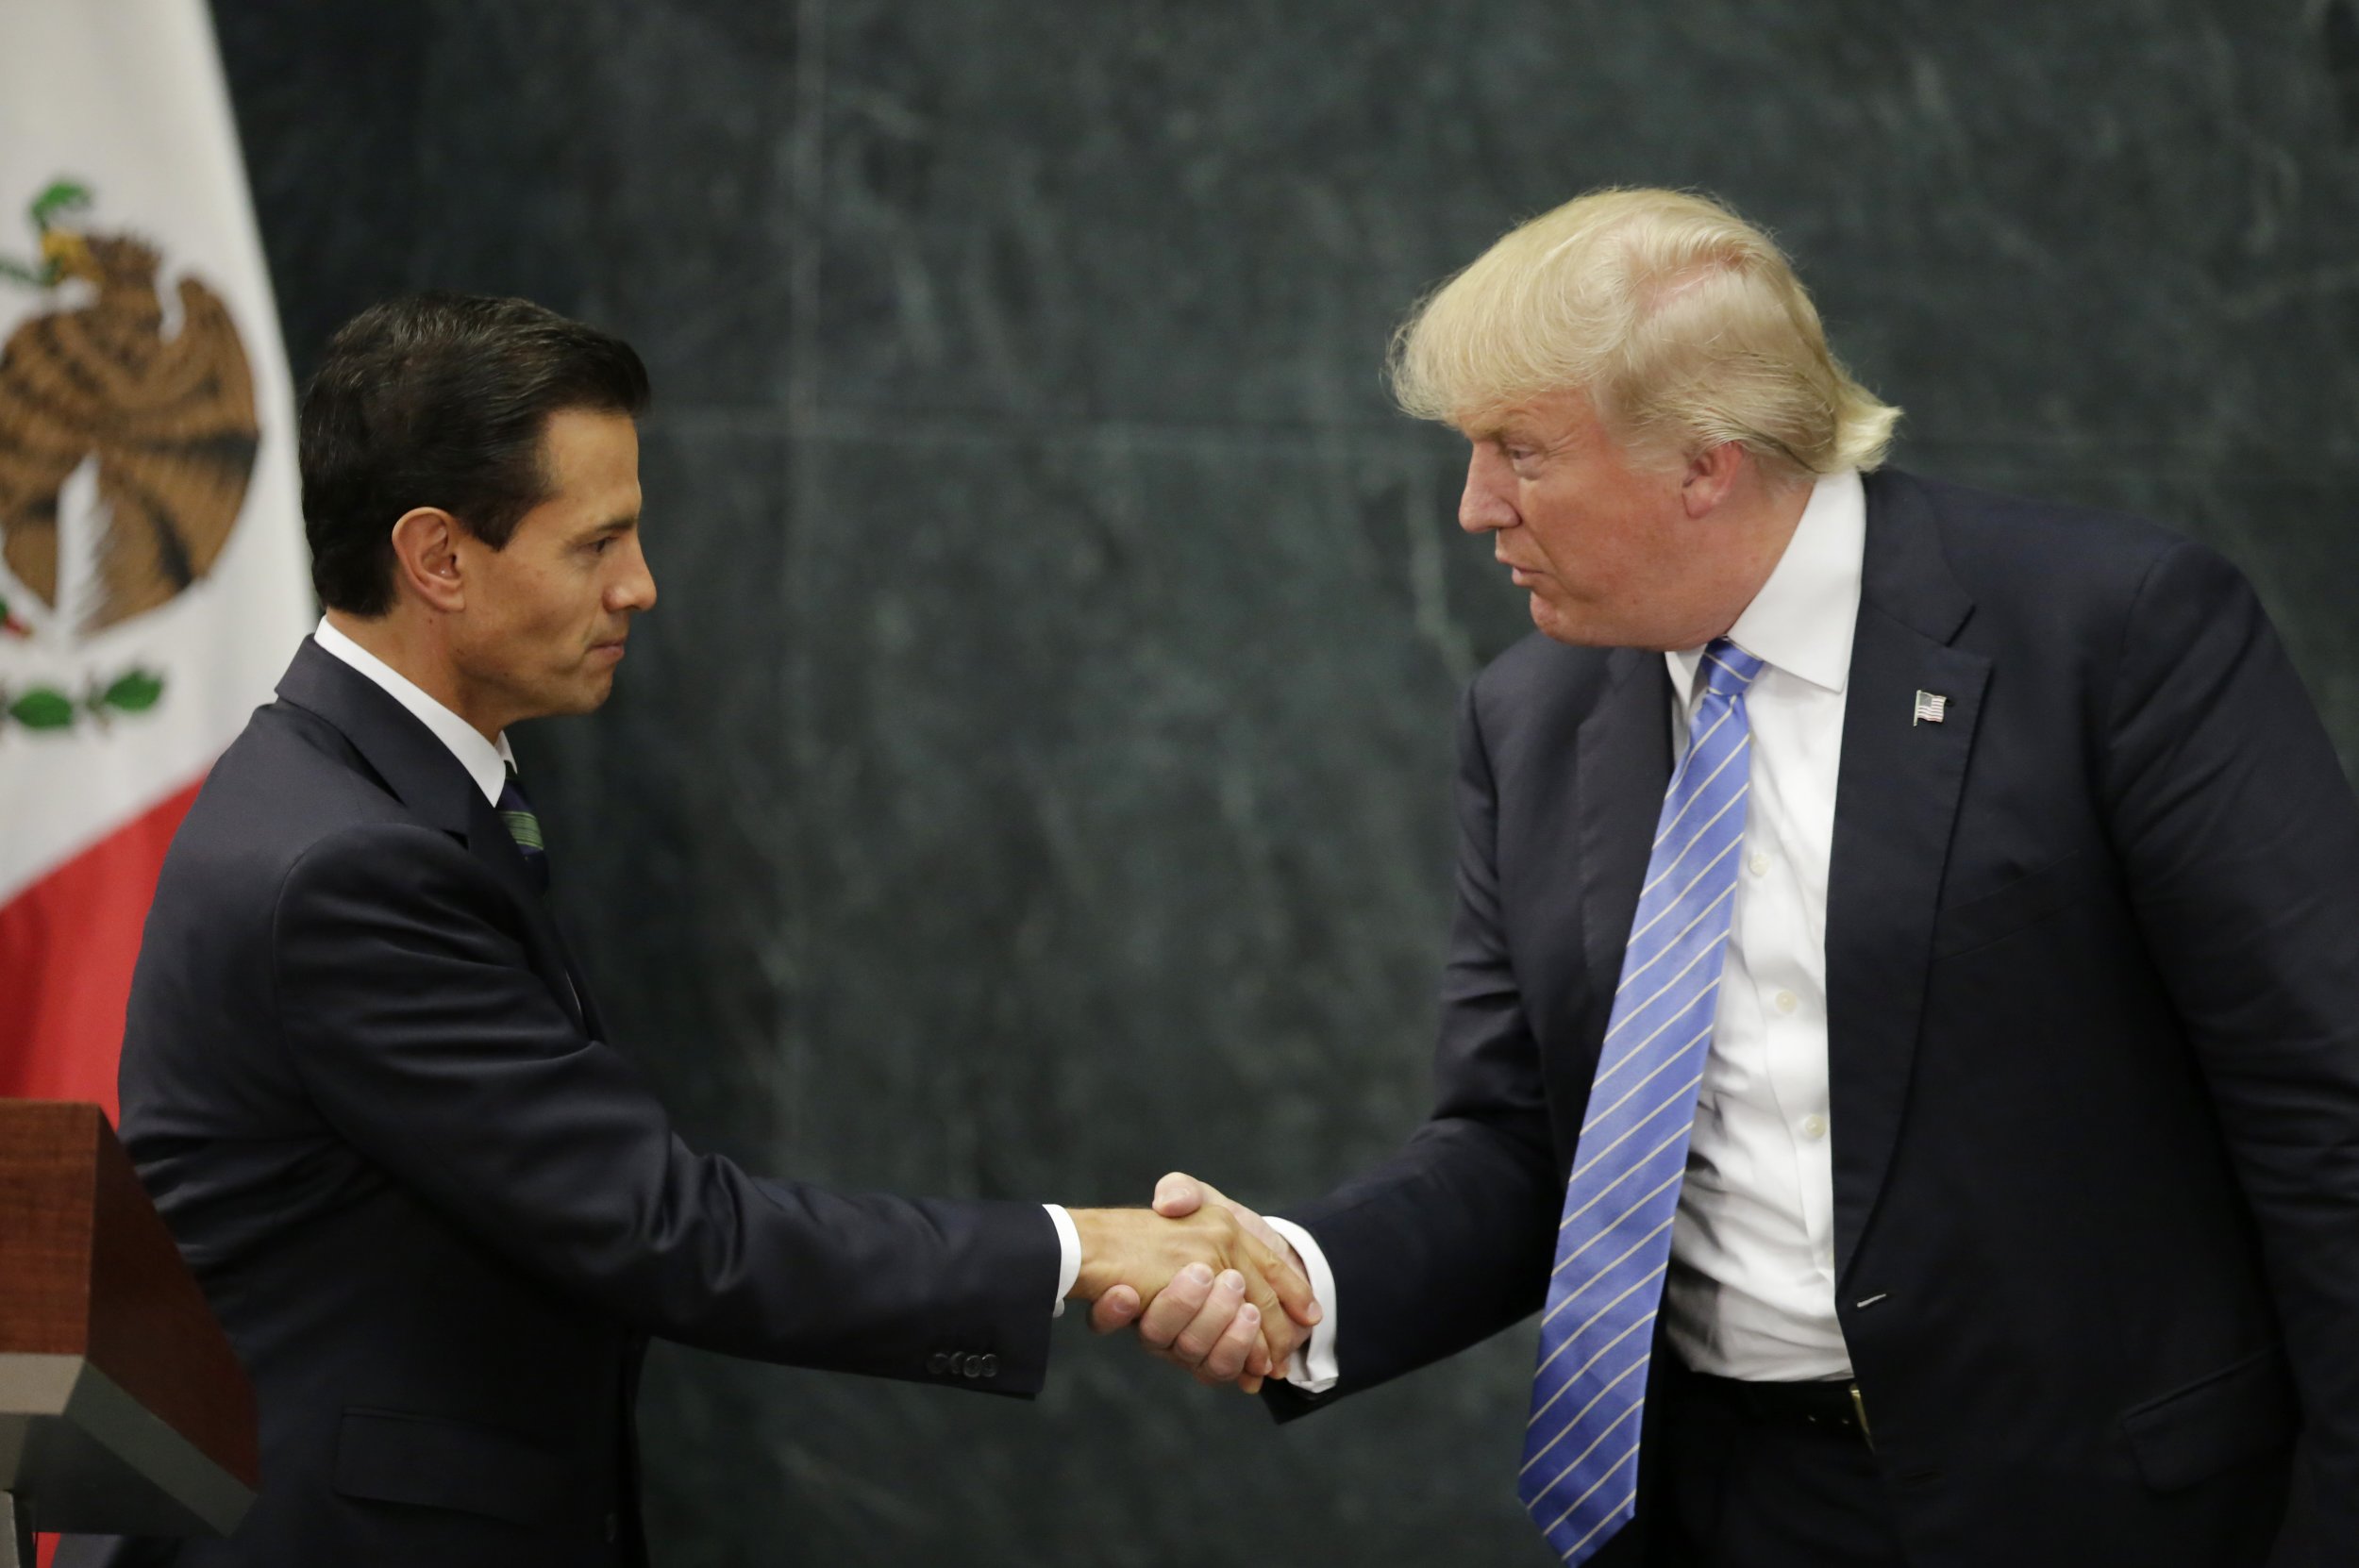 Donald Trump and Enrique Peña Nieto